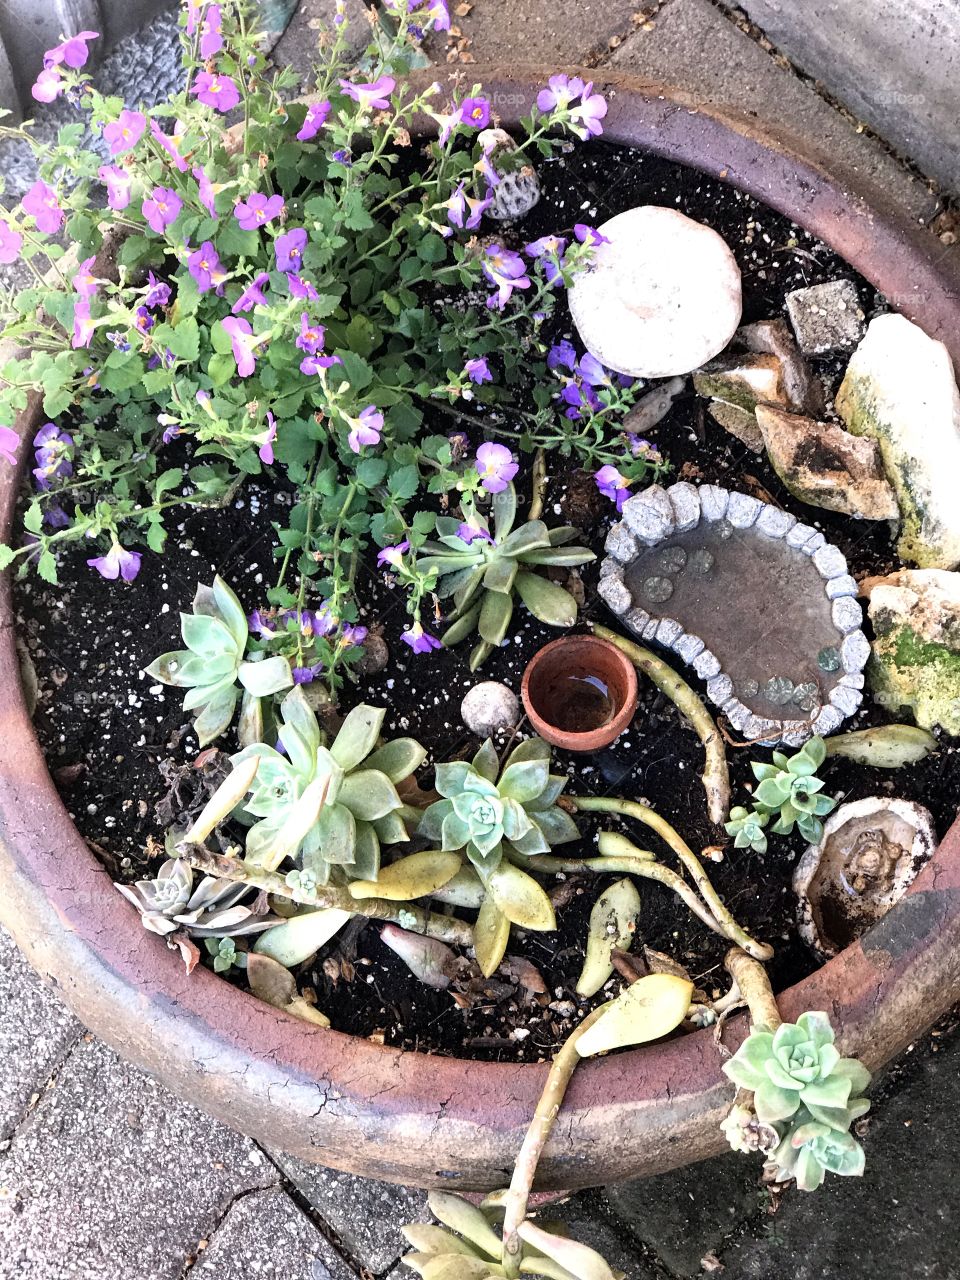 Small garden